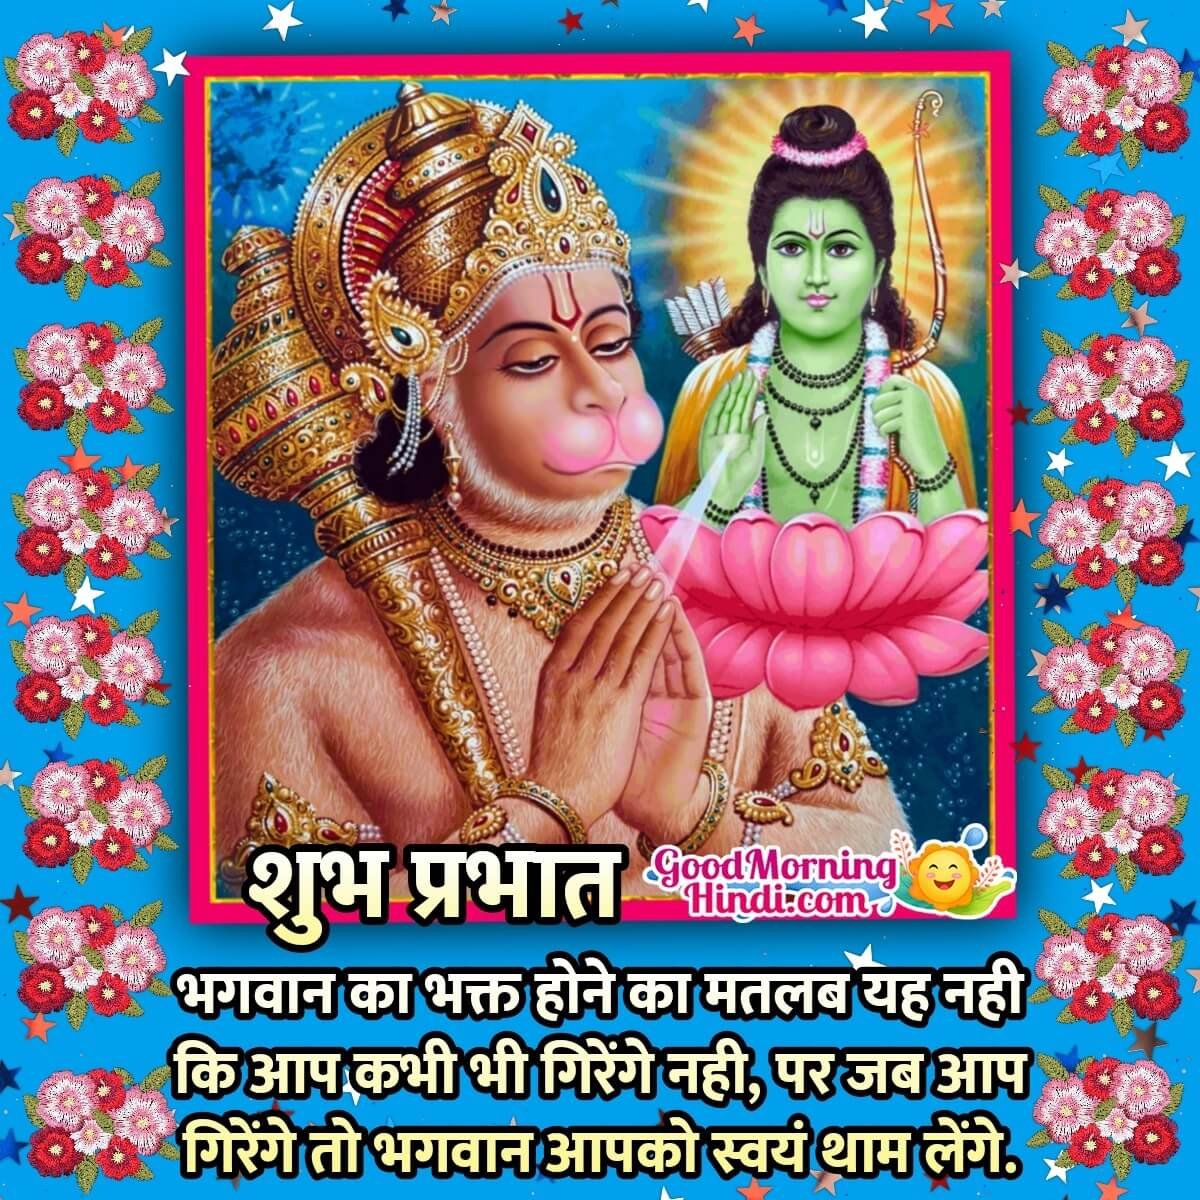 Shubh Prabhat Hanuman Quote